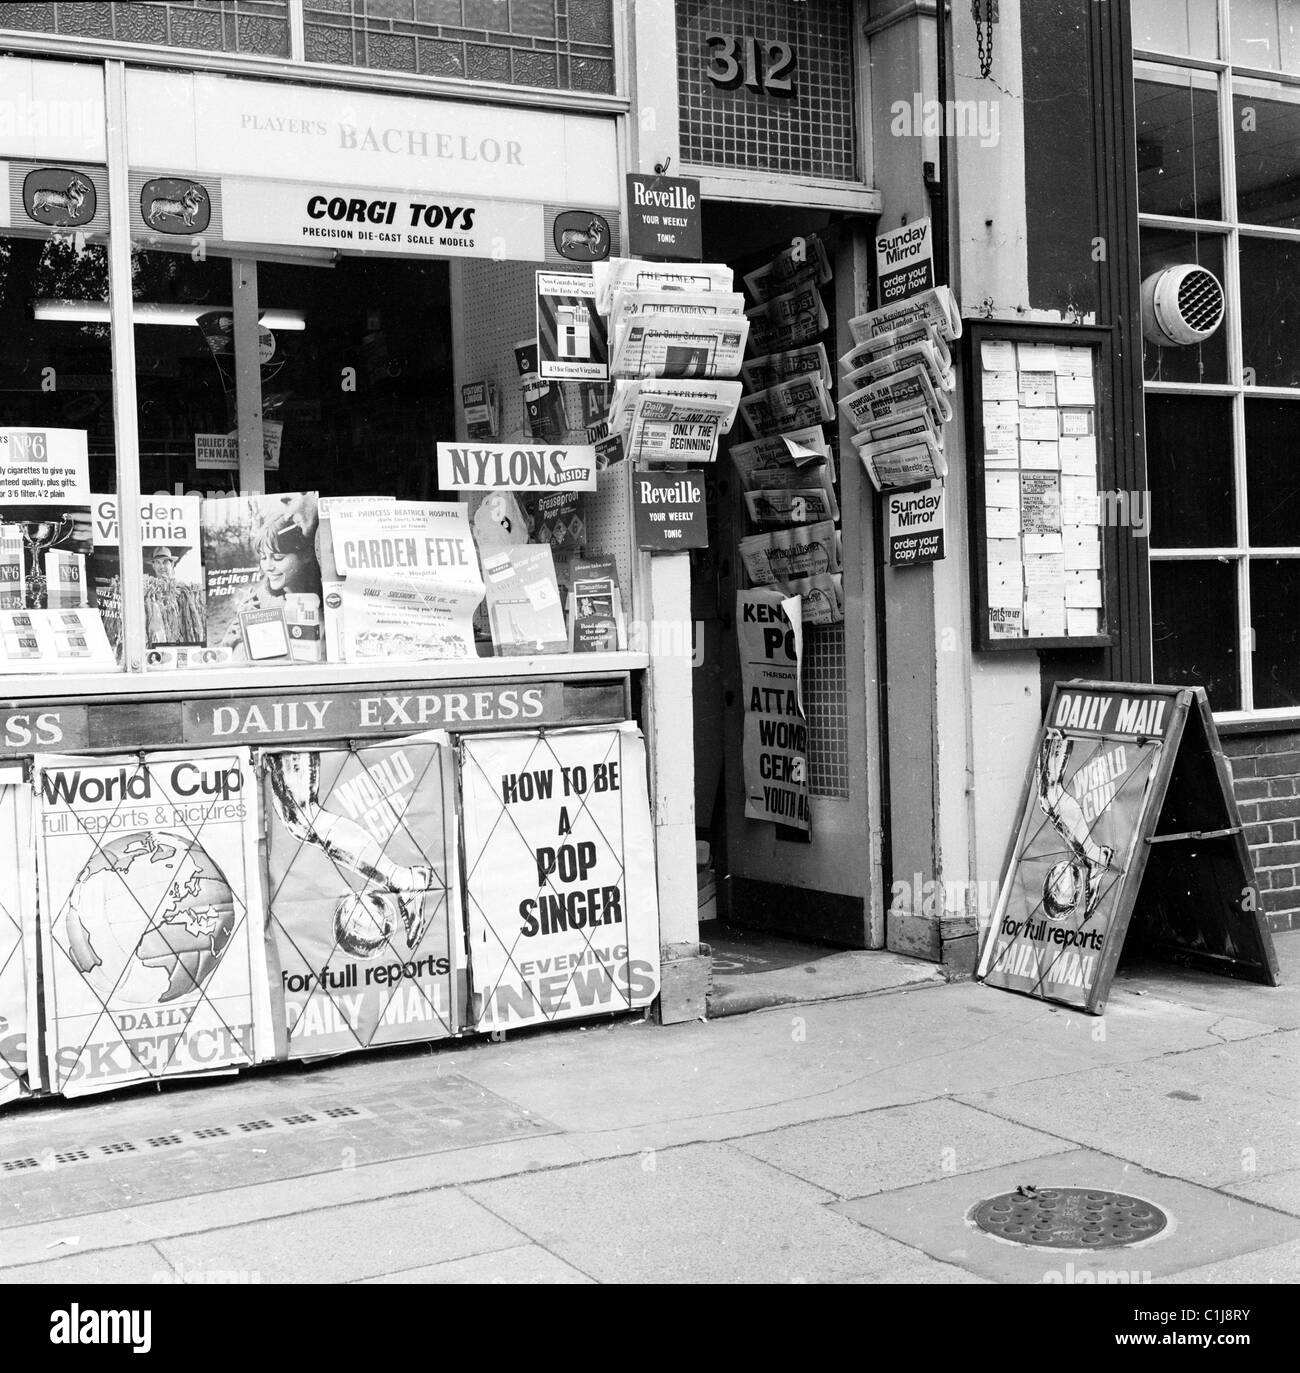 1966, Londra, all'esterno di un'edicola, titoli di giornali nazionali britannici con notizie sulla Coppa del mondo di calcio che si svolge in Inghilterra. Foto Stock